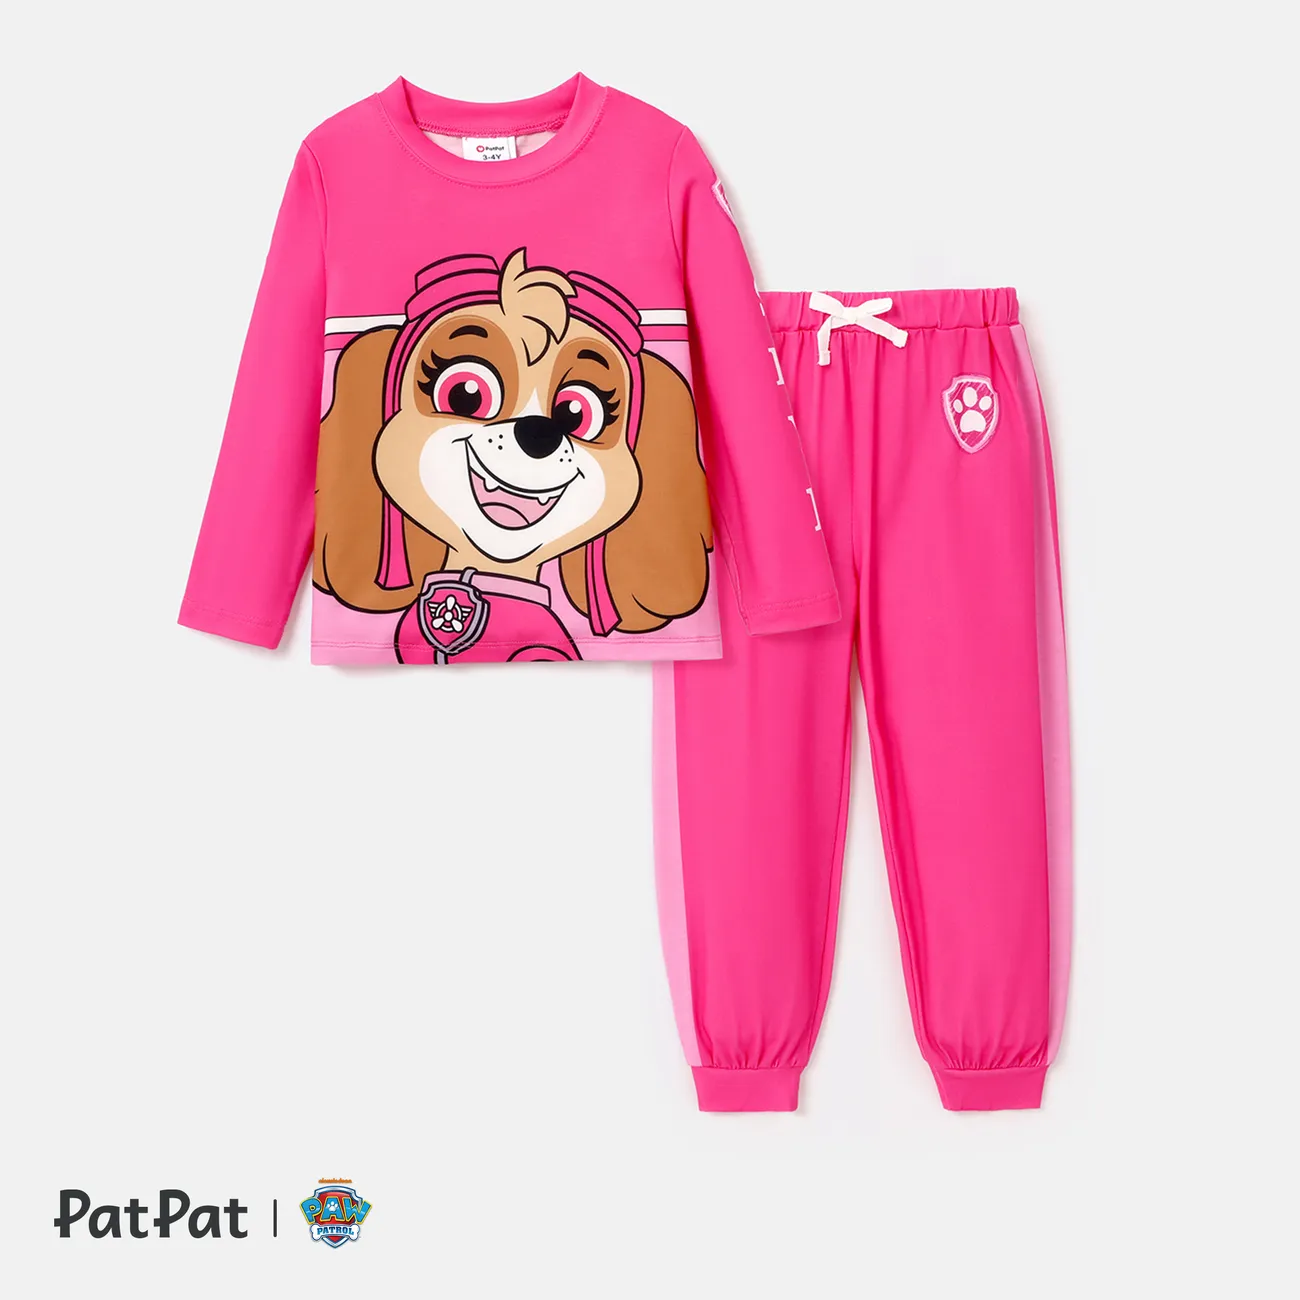 PAW Patrol Toddler Boy/Girl 2-Piece Cartoon Print Top and Pants Set Pink big image 1